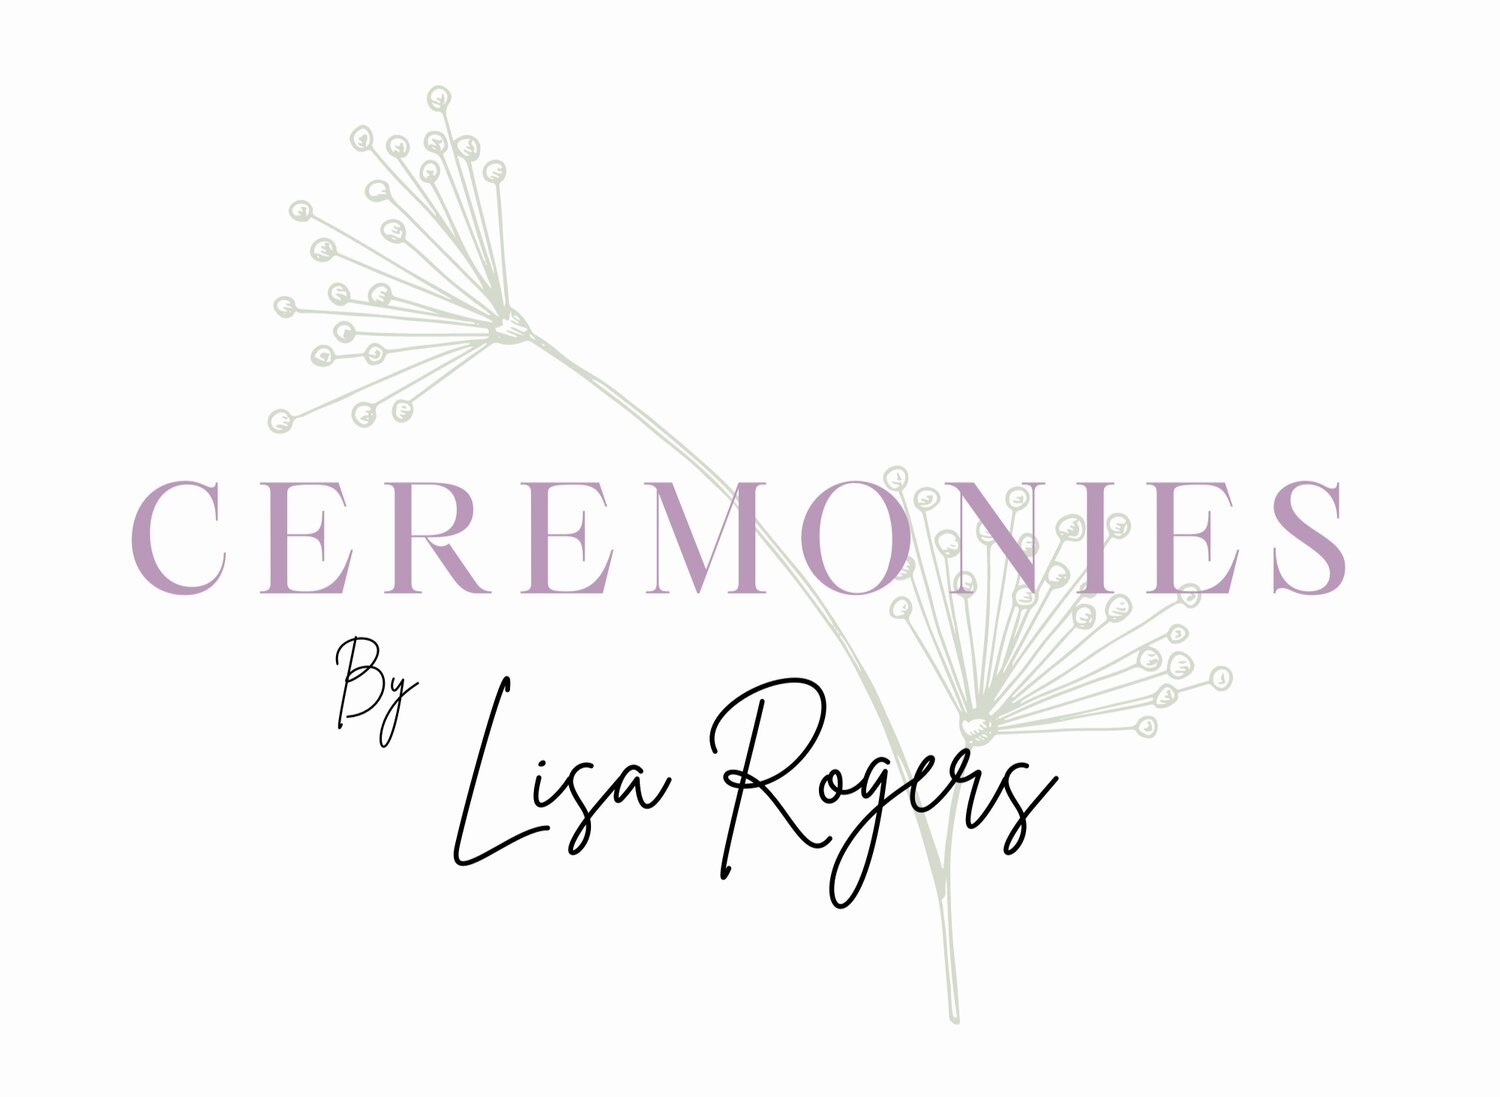 Ceremonies by Lisa Rogers